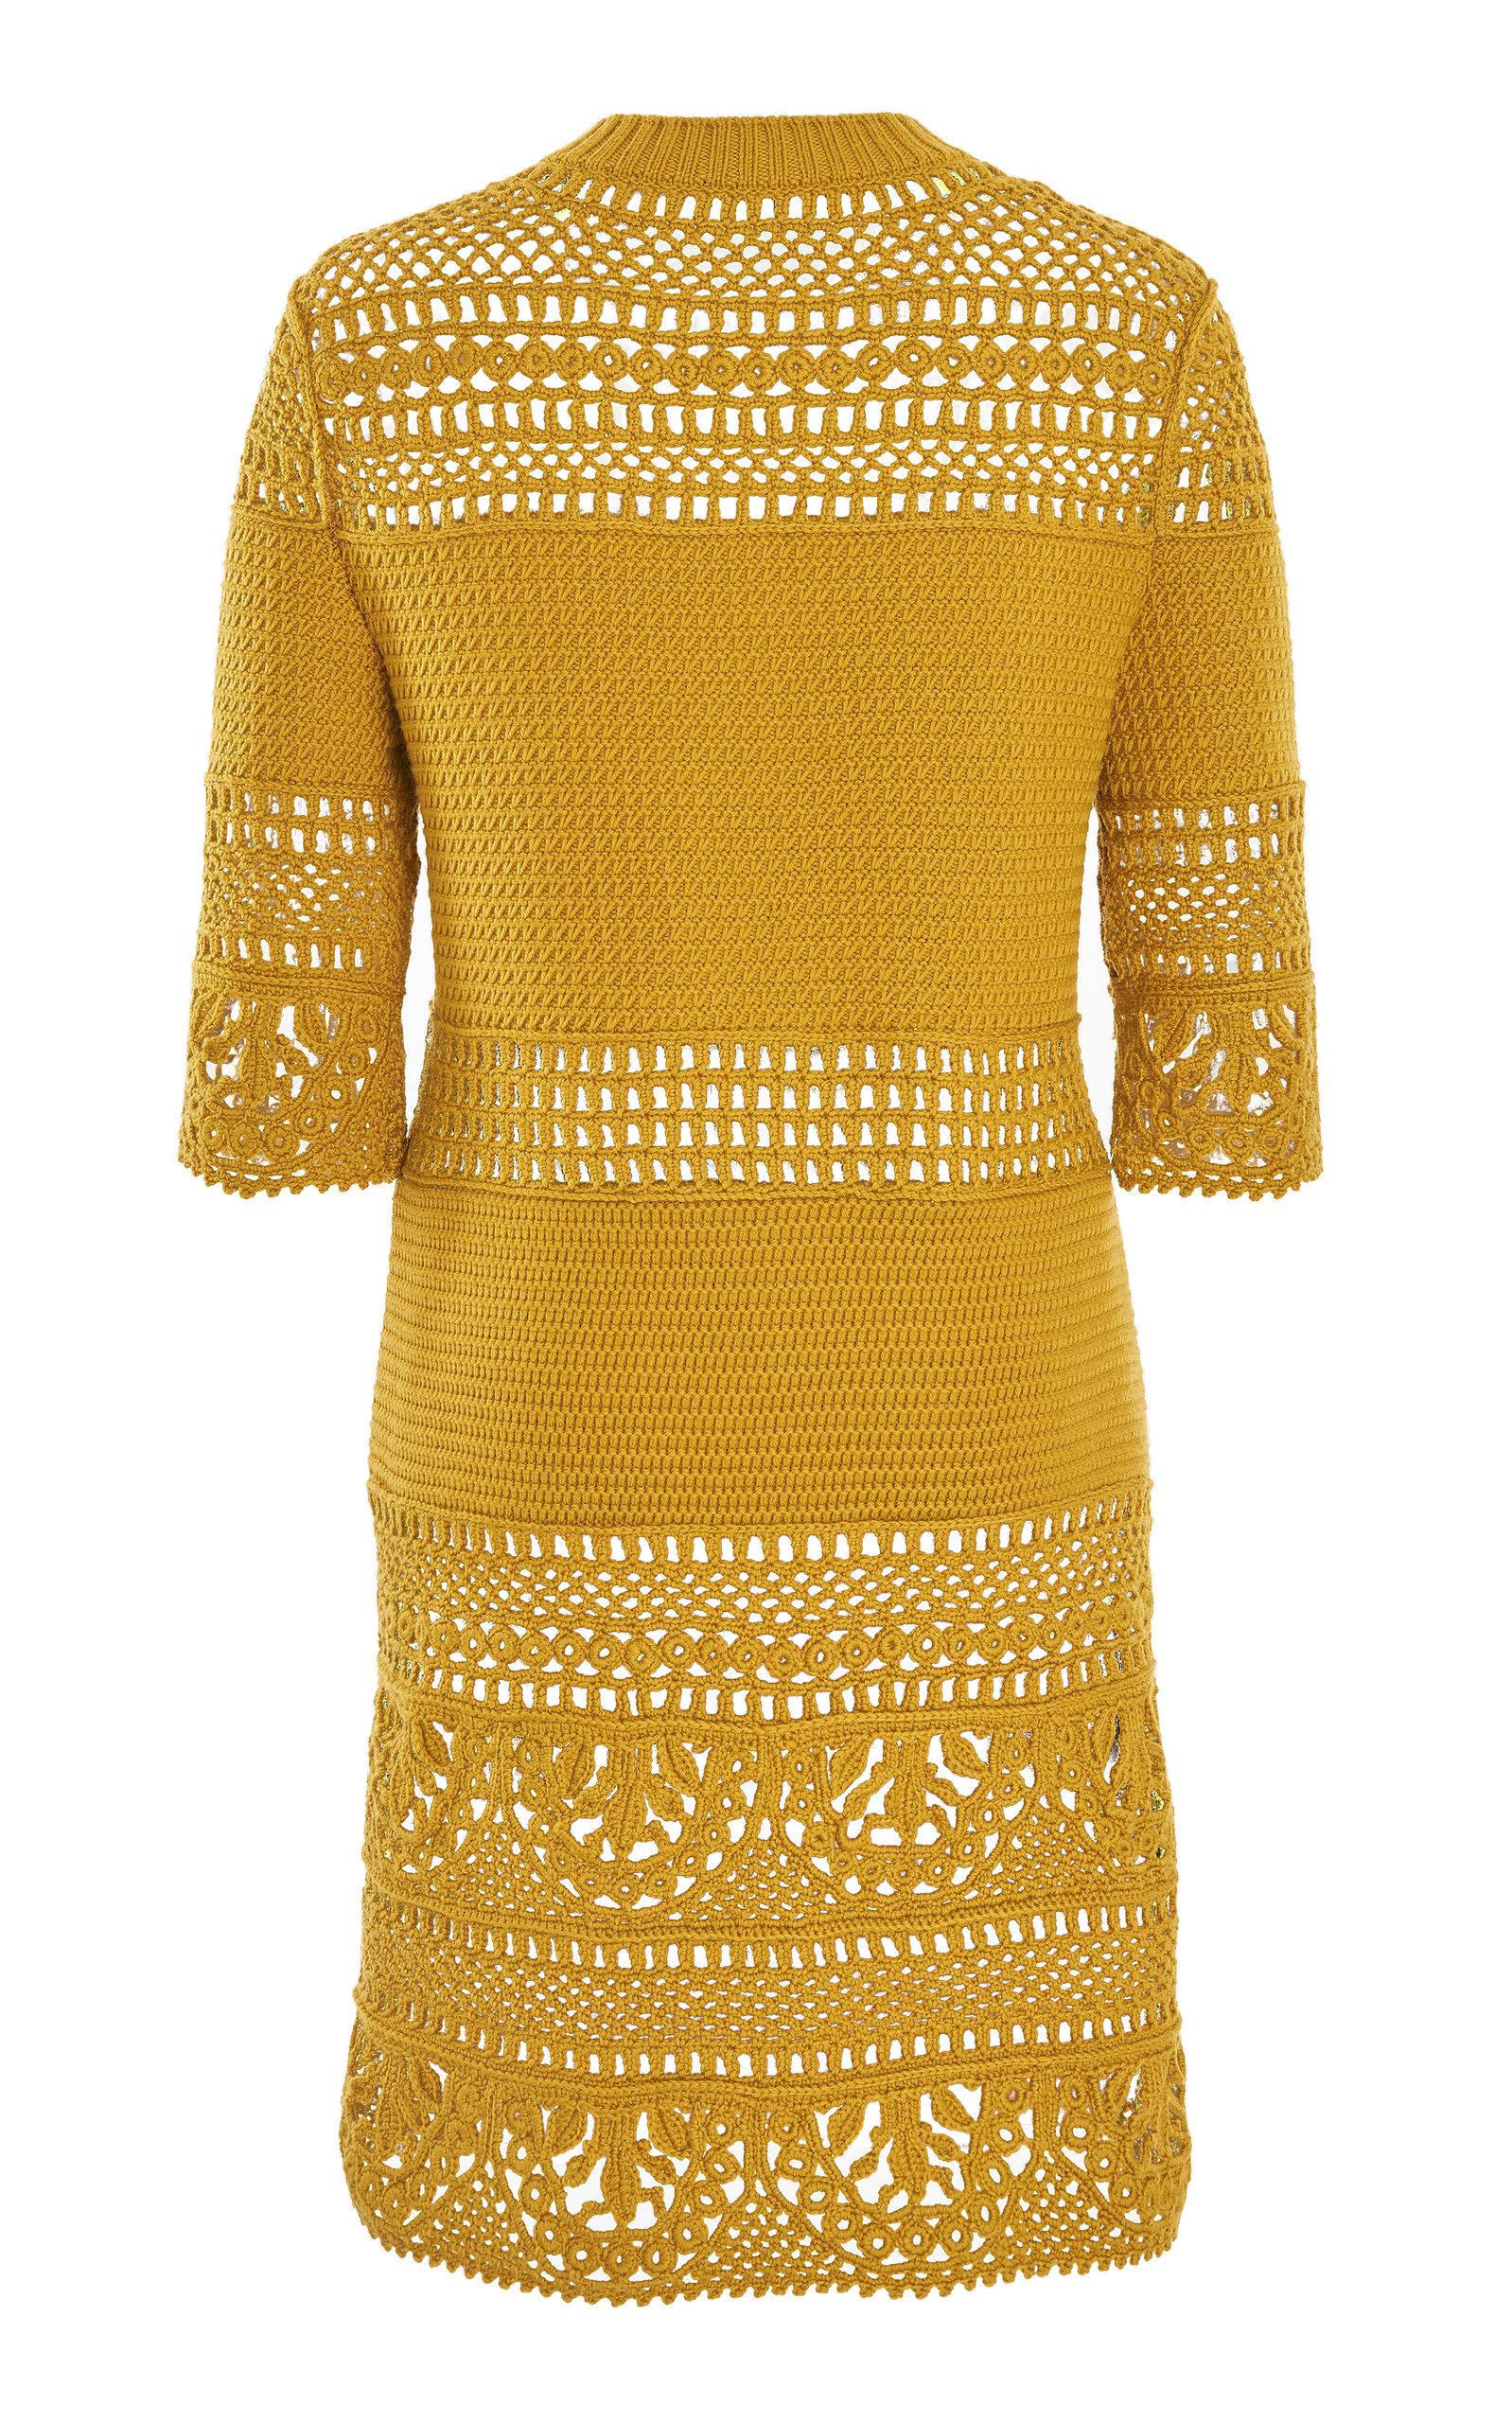 Alberta Ferretti Wool Crocheted Mini Dress in Yellow - Lyst